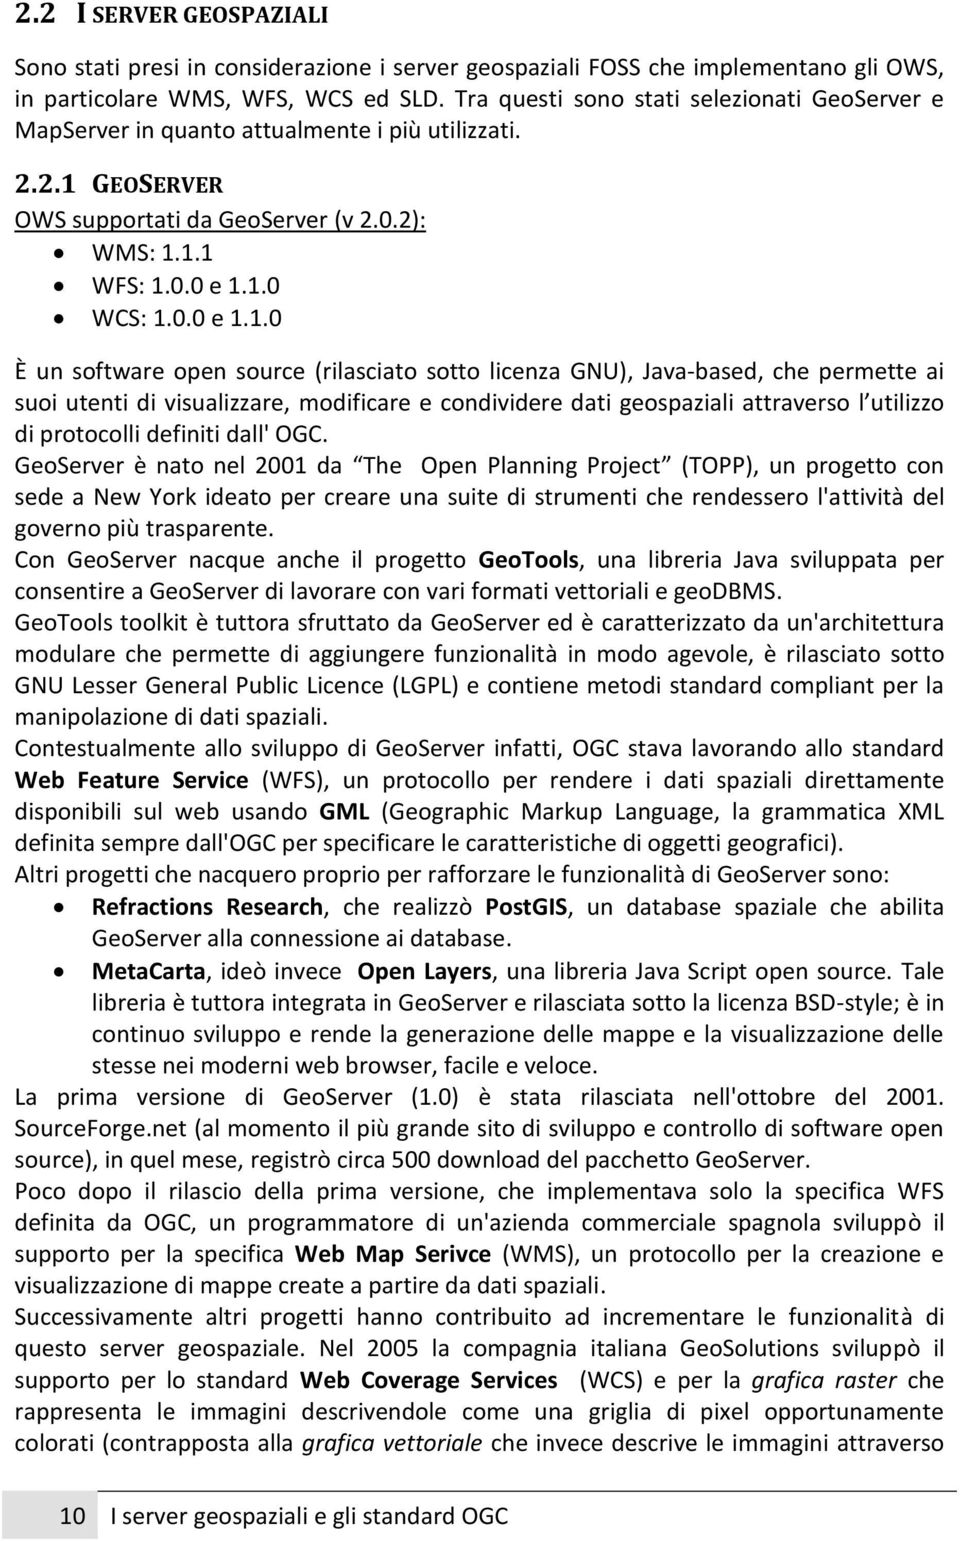 GEOSERVER OWS supportati da GeoServer (v 2.0.2): WMS: 1.